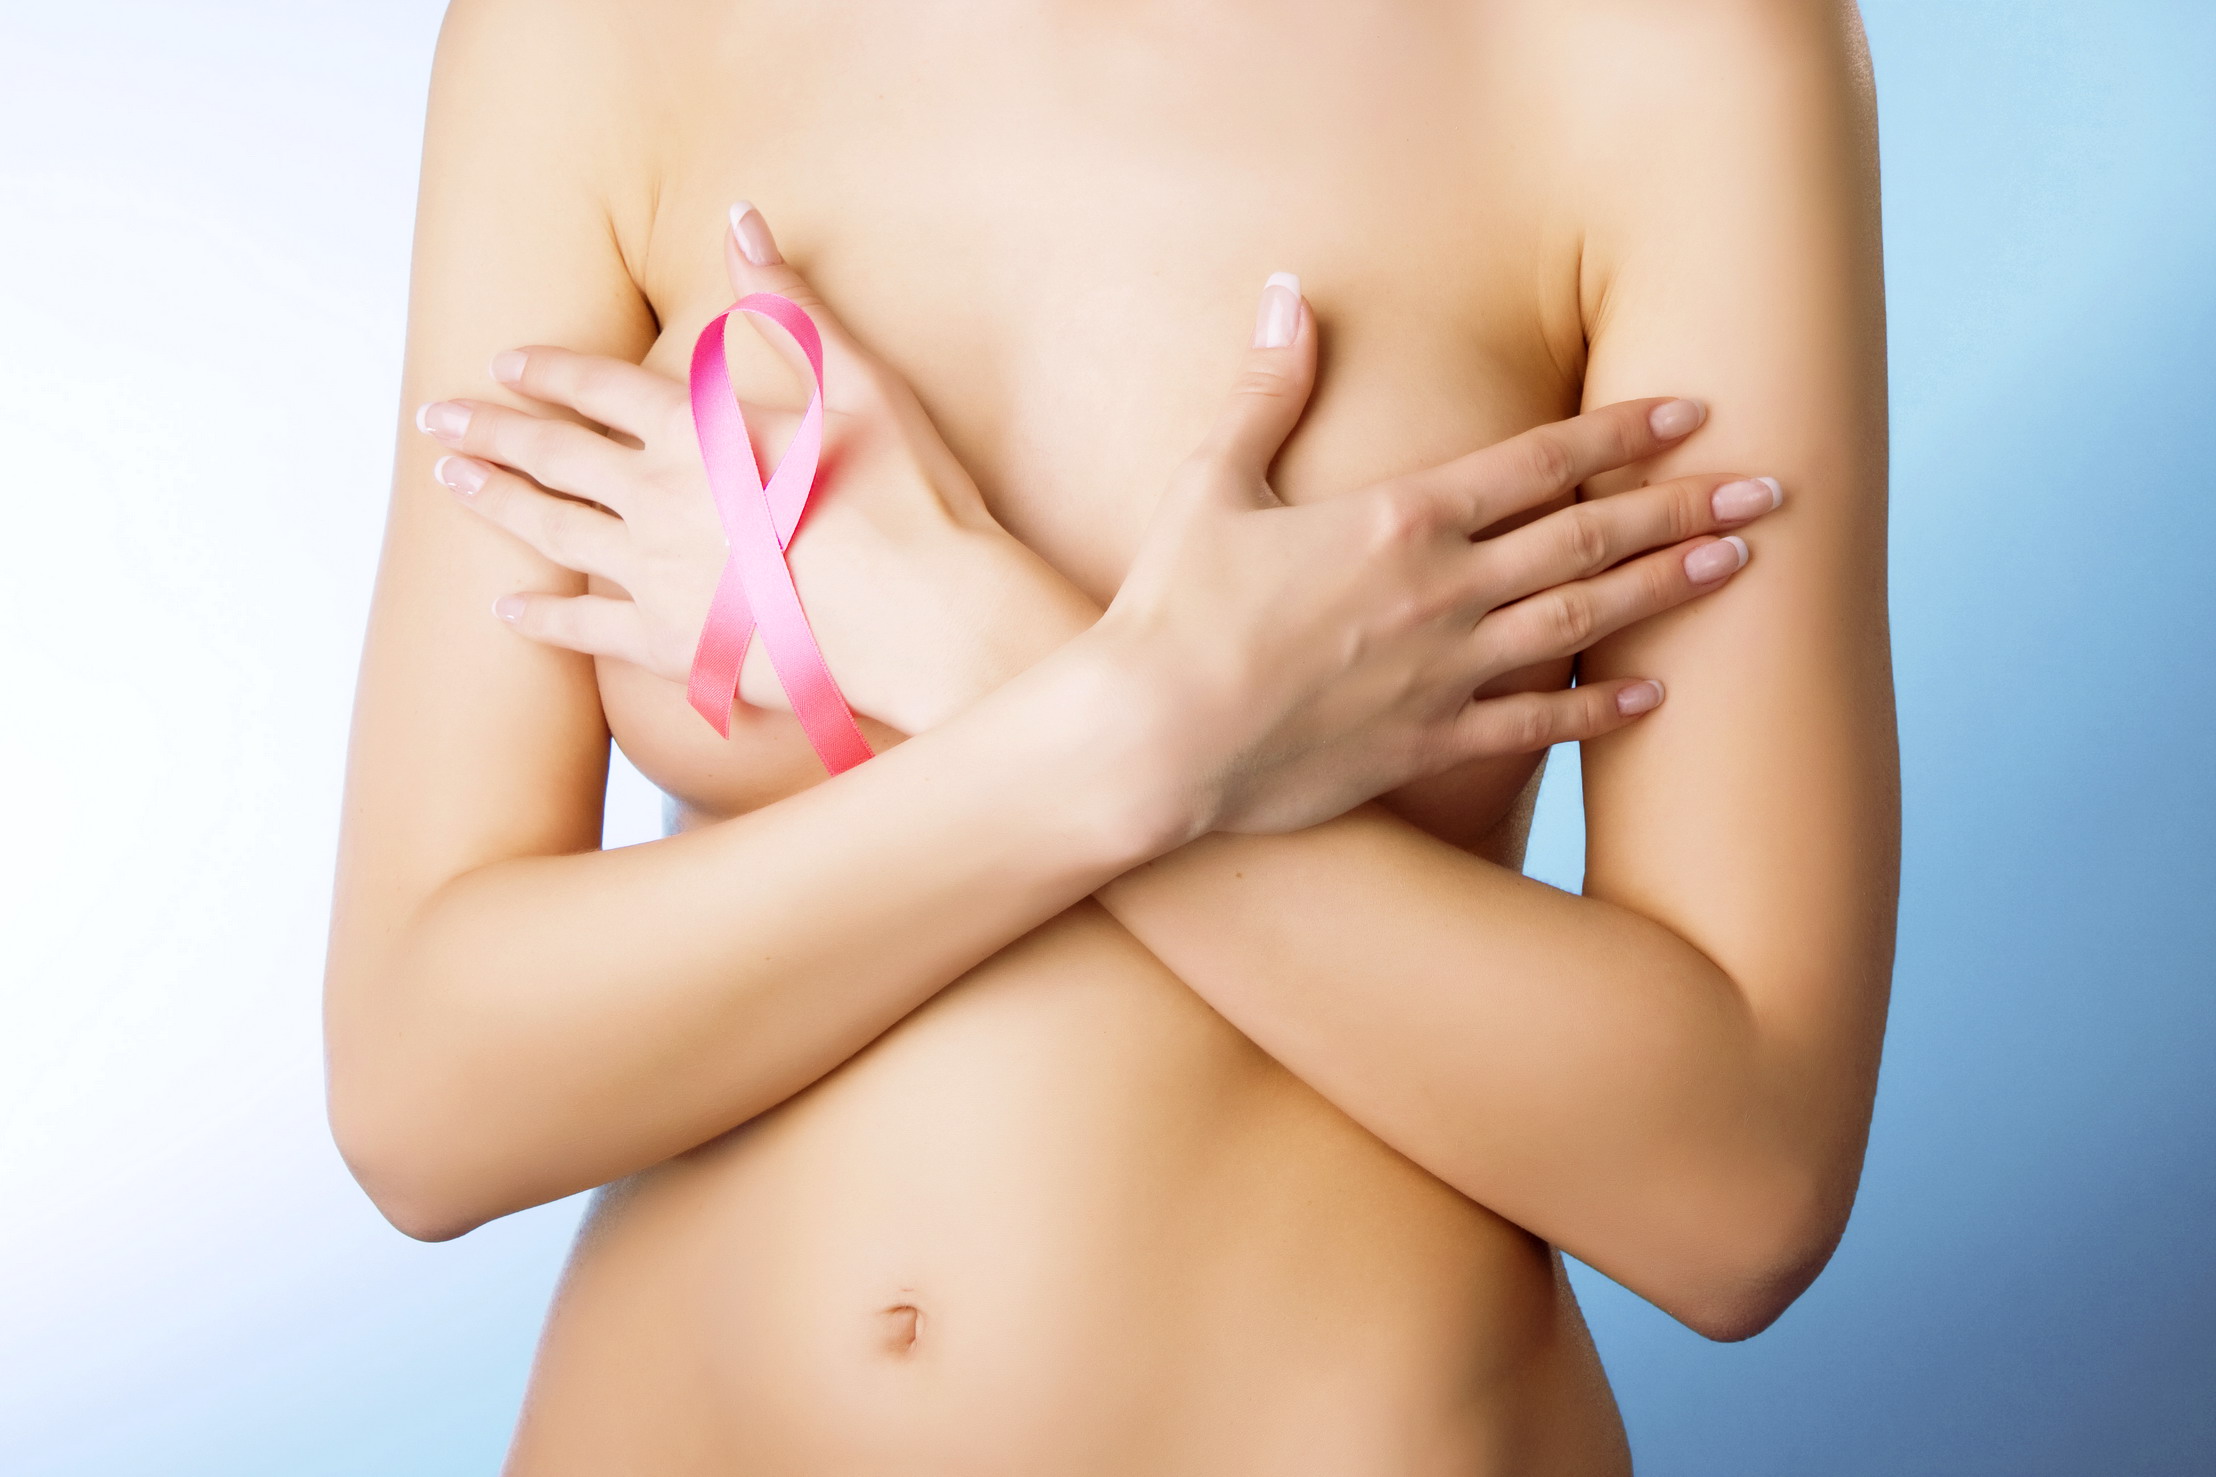 Quali sono i rischi dell’operazione al seno?